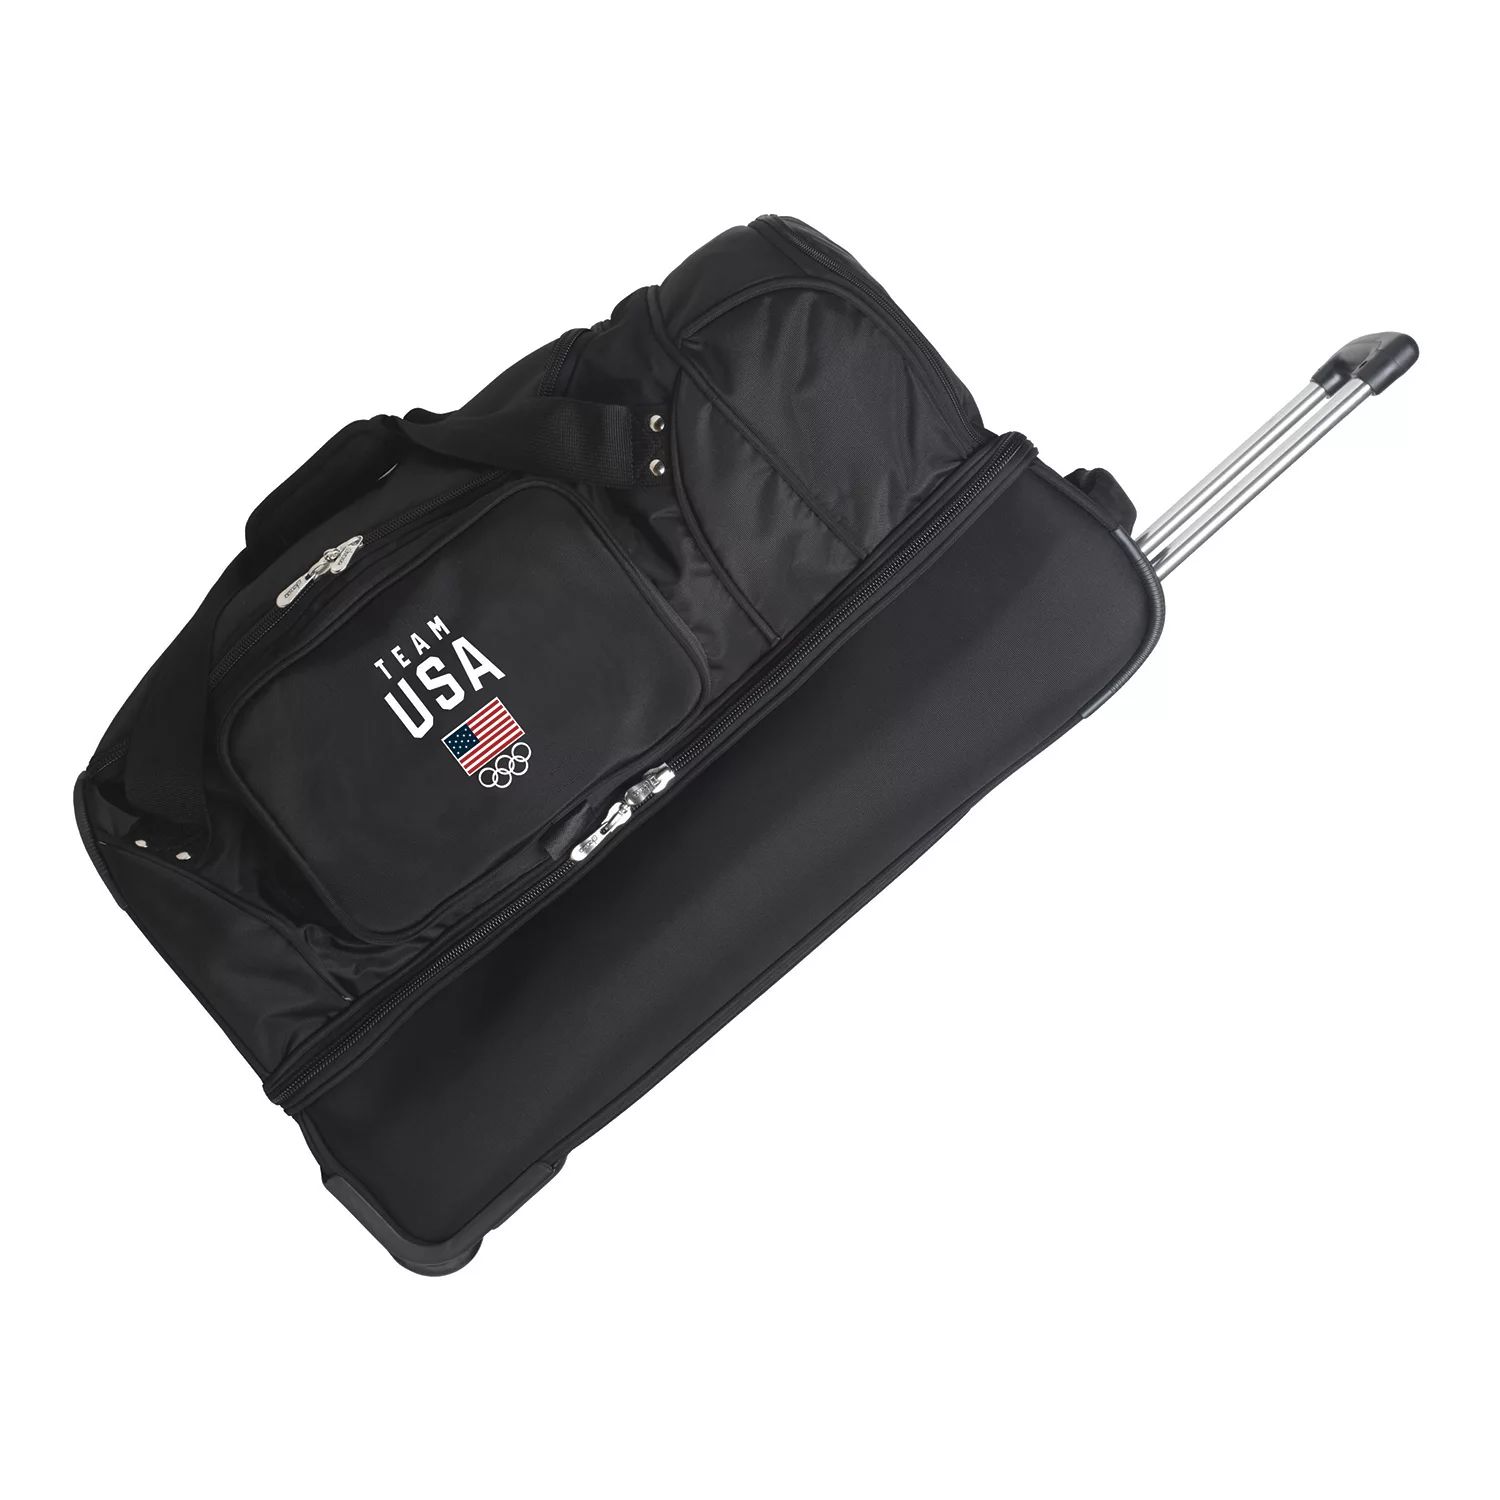 Спортивная сумка Denco с откидным дном, 27 дюймов, олимпийская сборная США Denco цена и фото